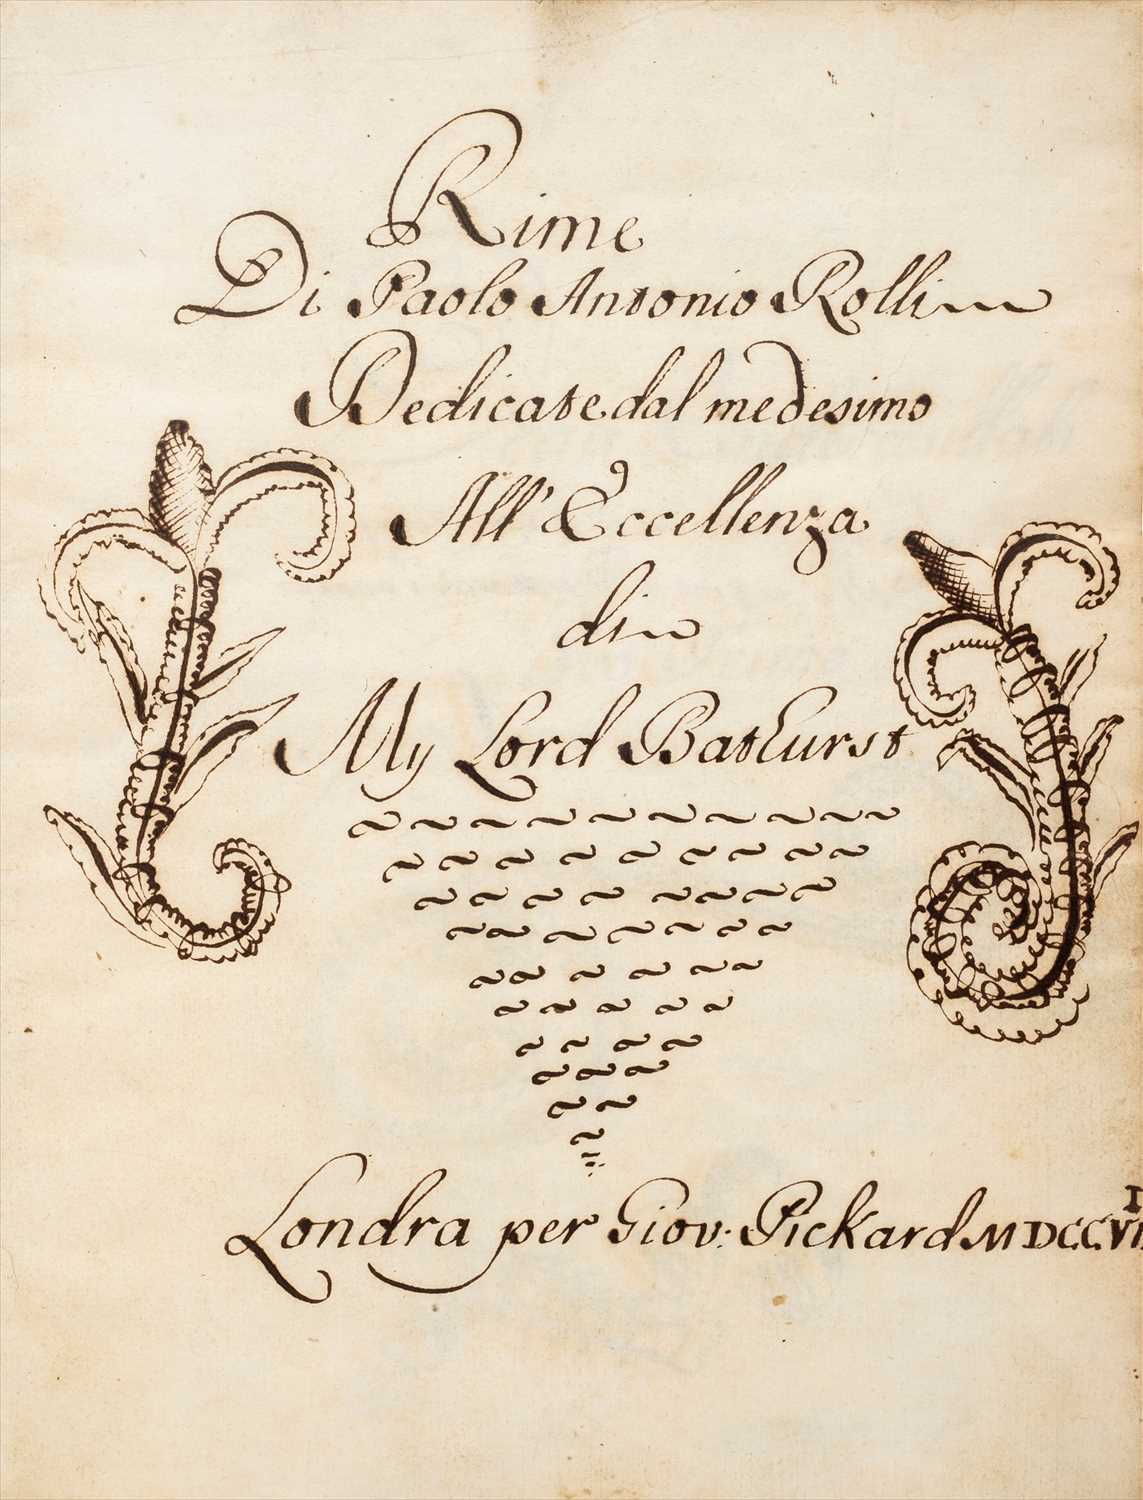 Lot 73 - Rolli (Paolo Antonio, 1687-1765). 'Rime, dedicate all'eccellenza My Lord Bathurst, MDCCVII'